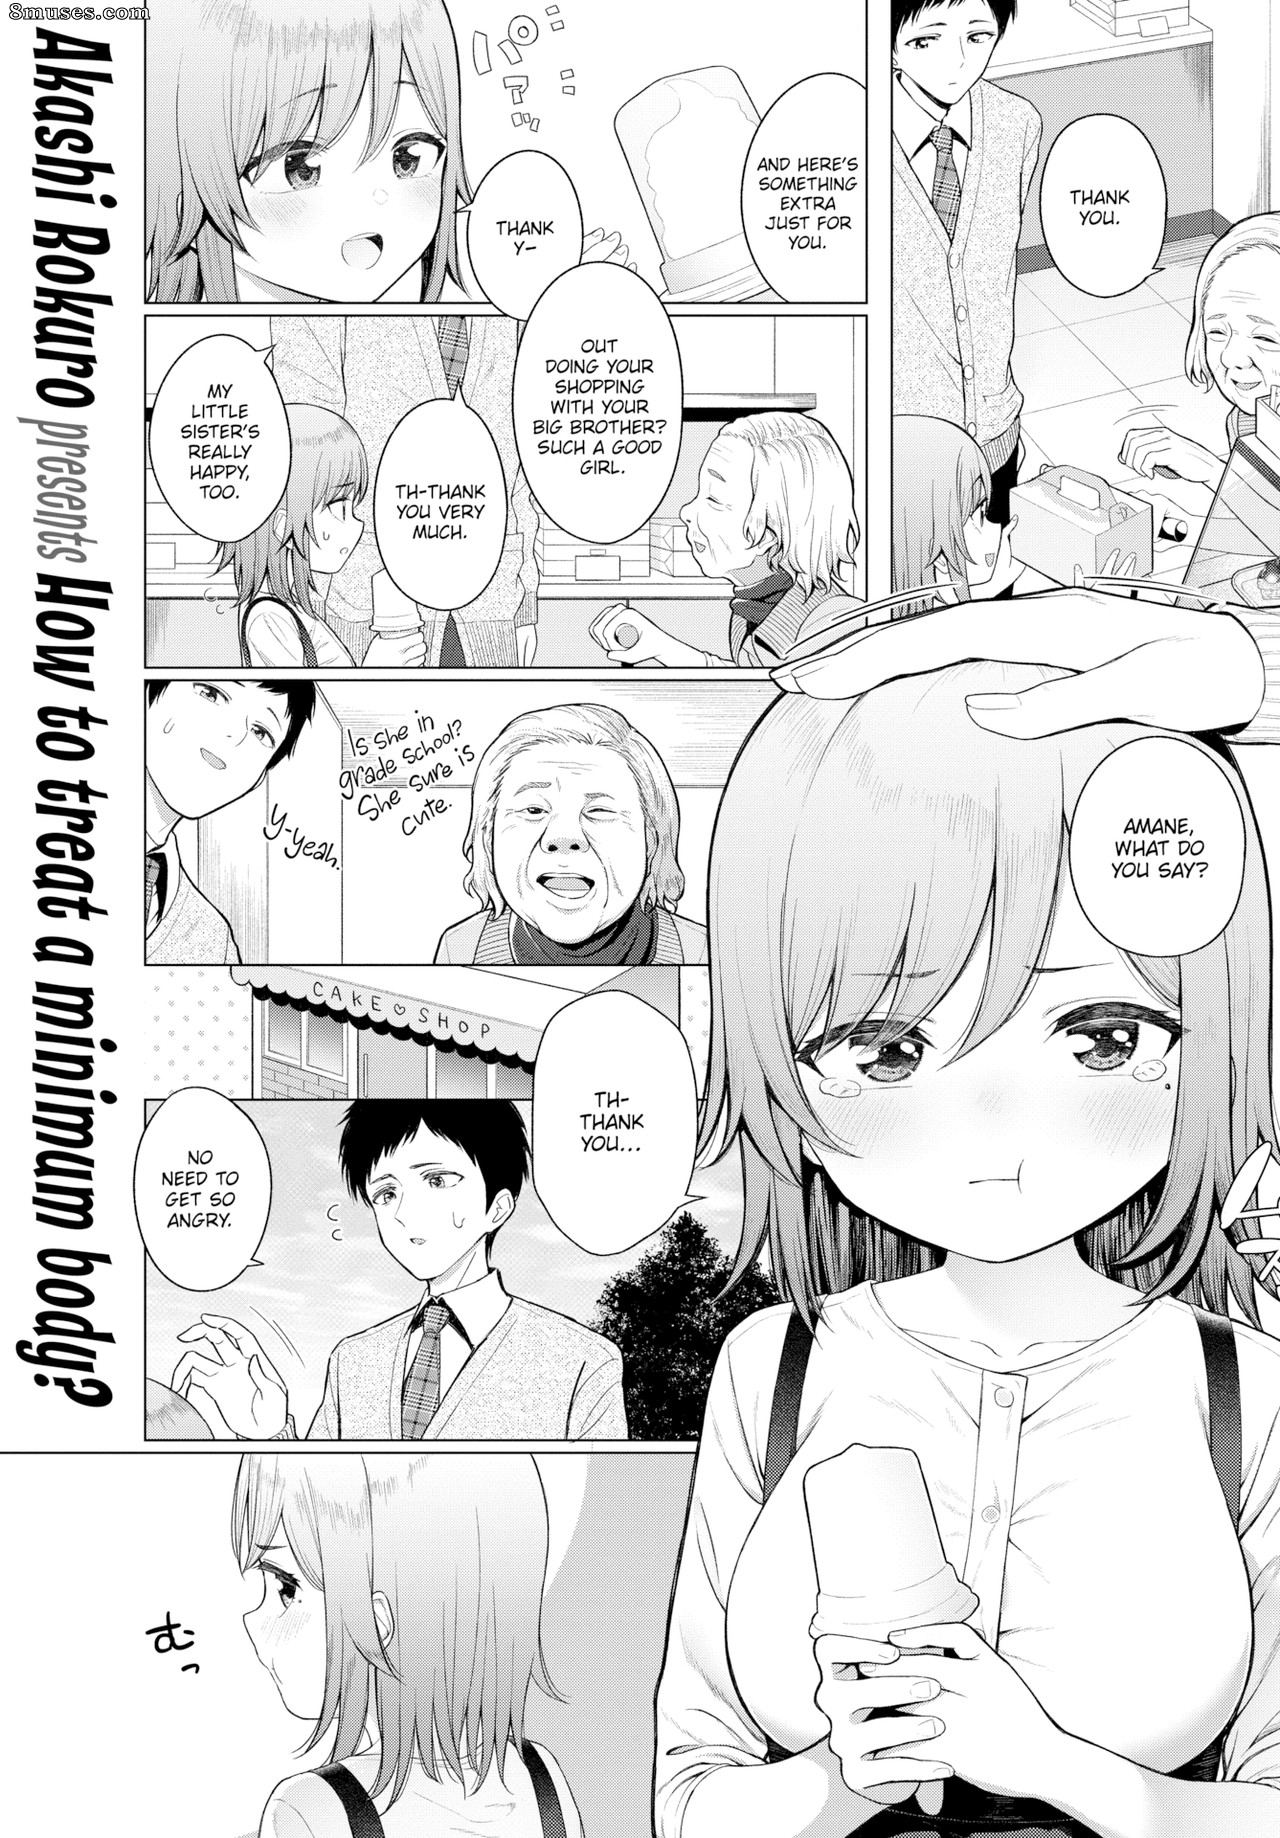 Page 1 Fakku-Comics/Akashi-Rokuro/Little-Big-Sister 8muses pic